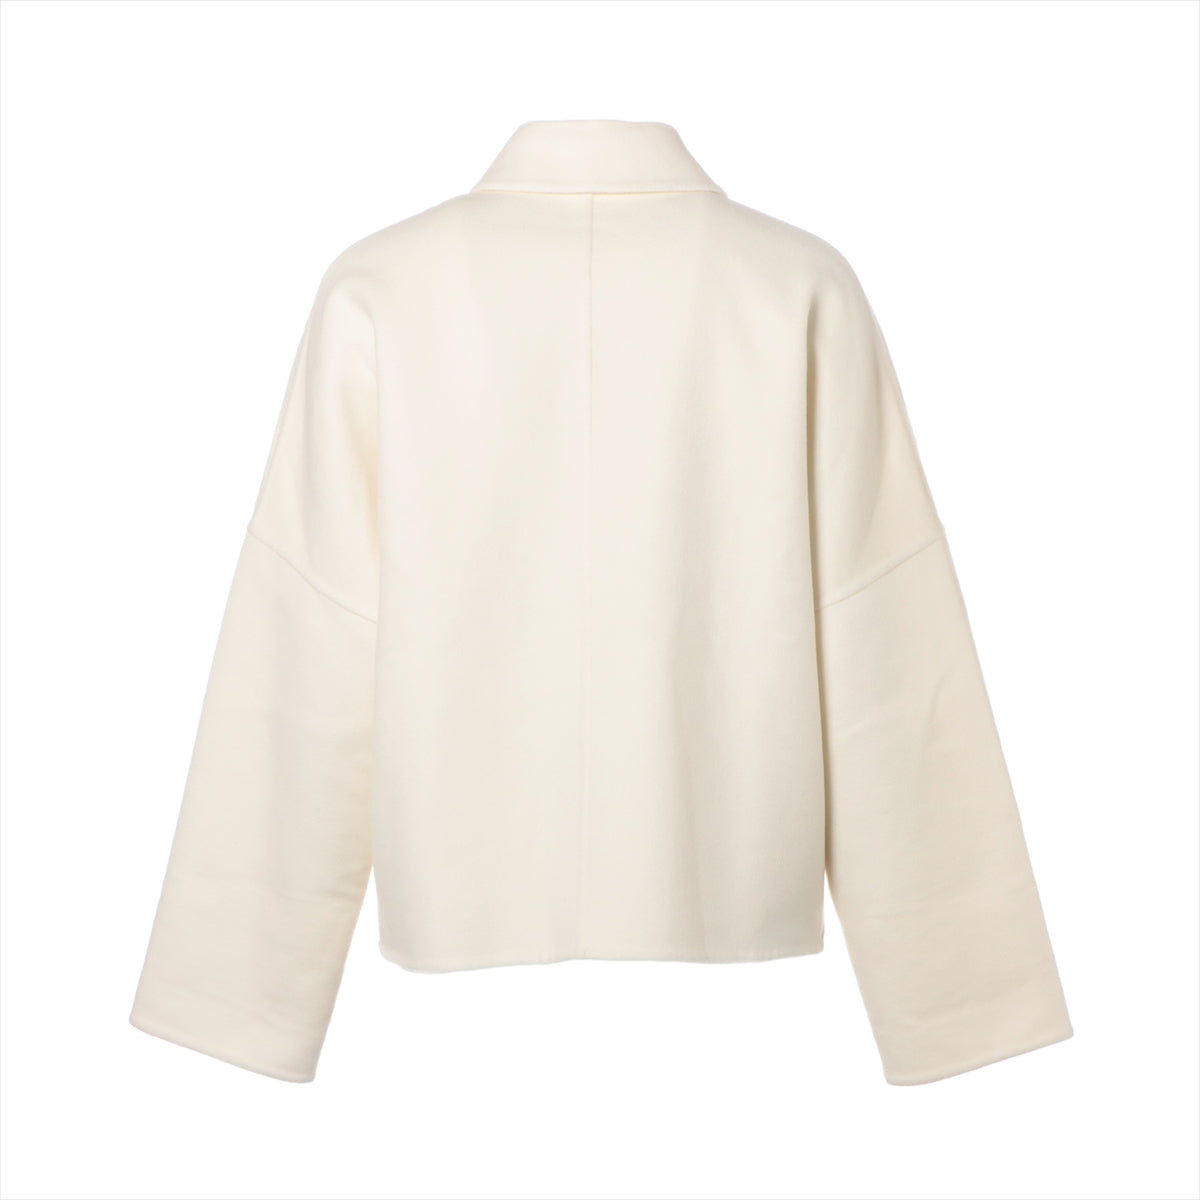 Hermès 23AW Cashmere Pea coat 36 Ladies' White  double face short jacket logo button